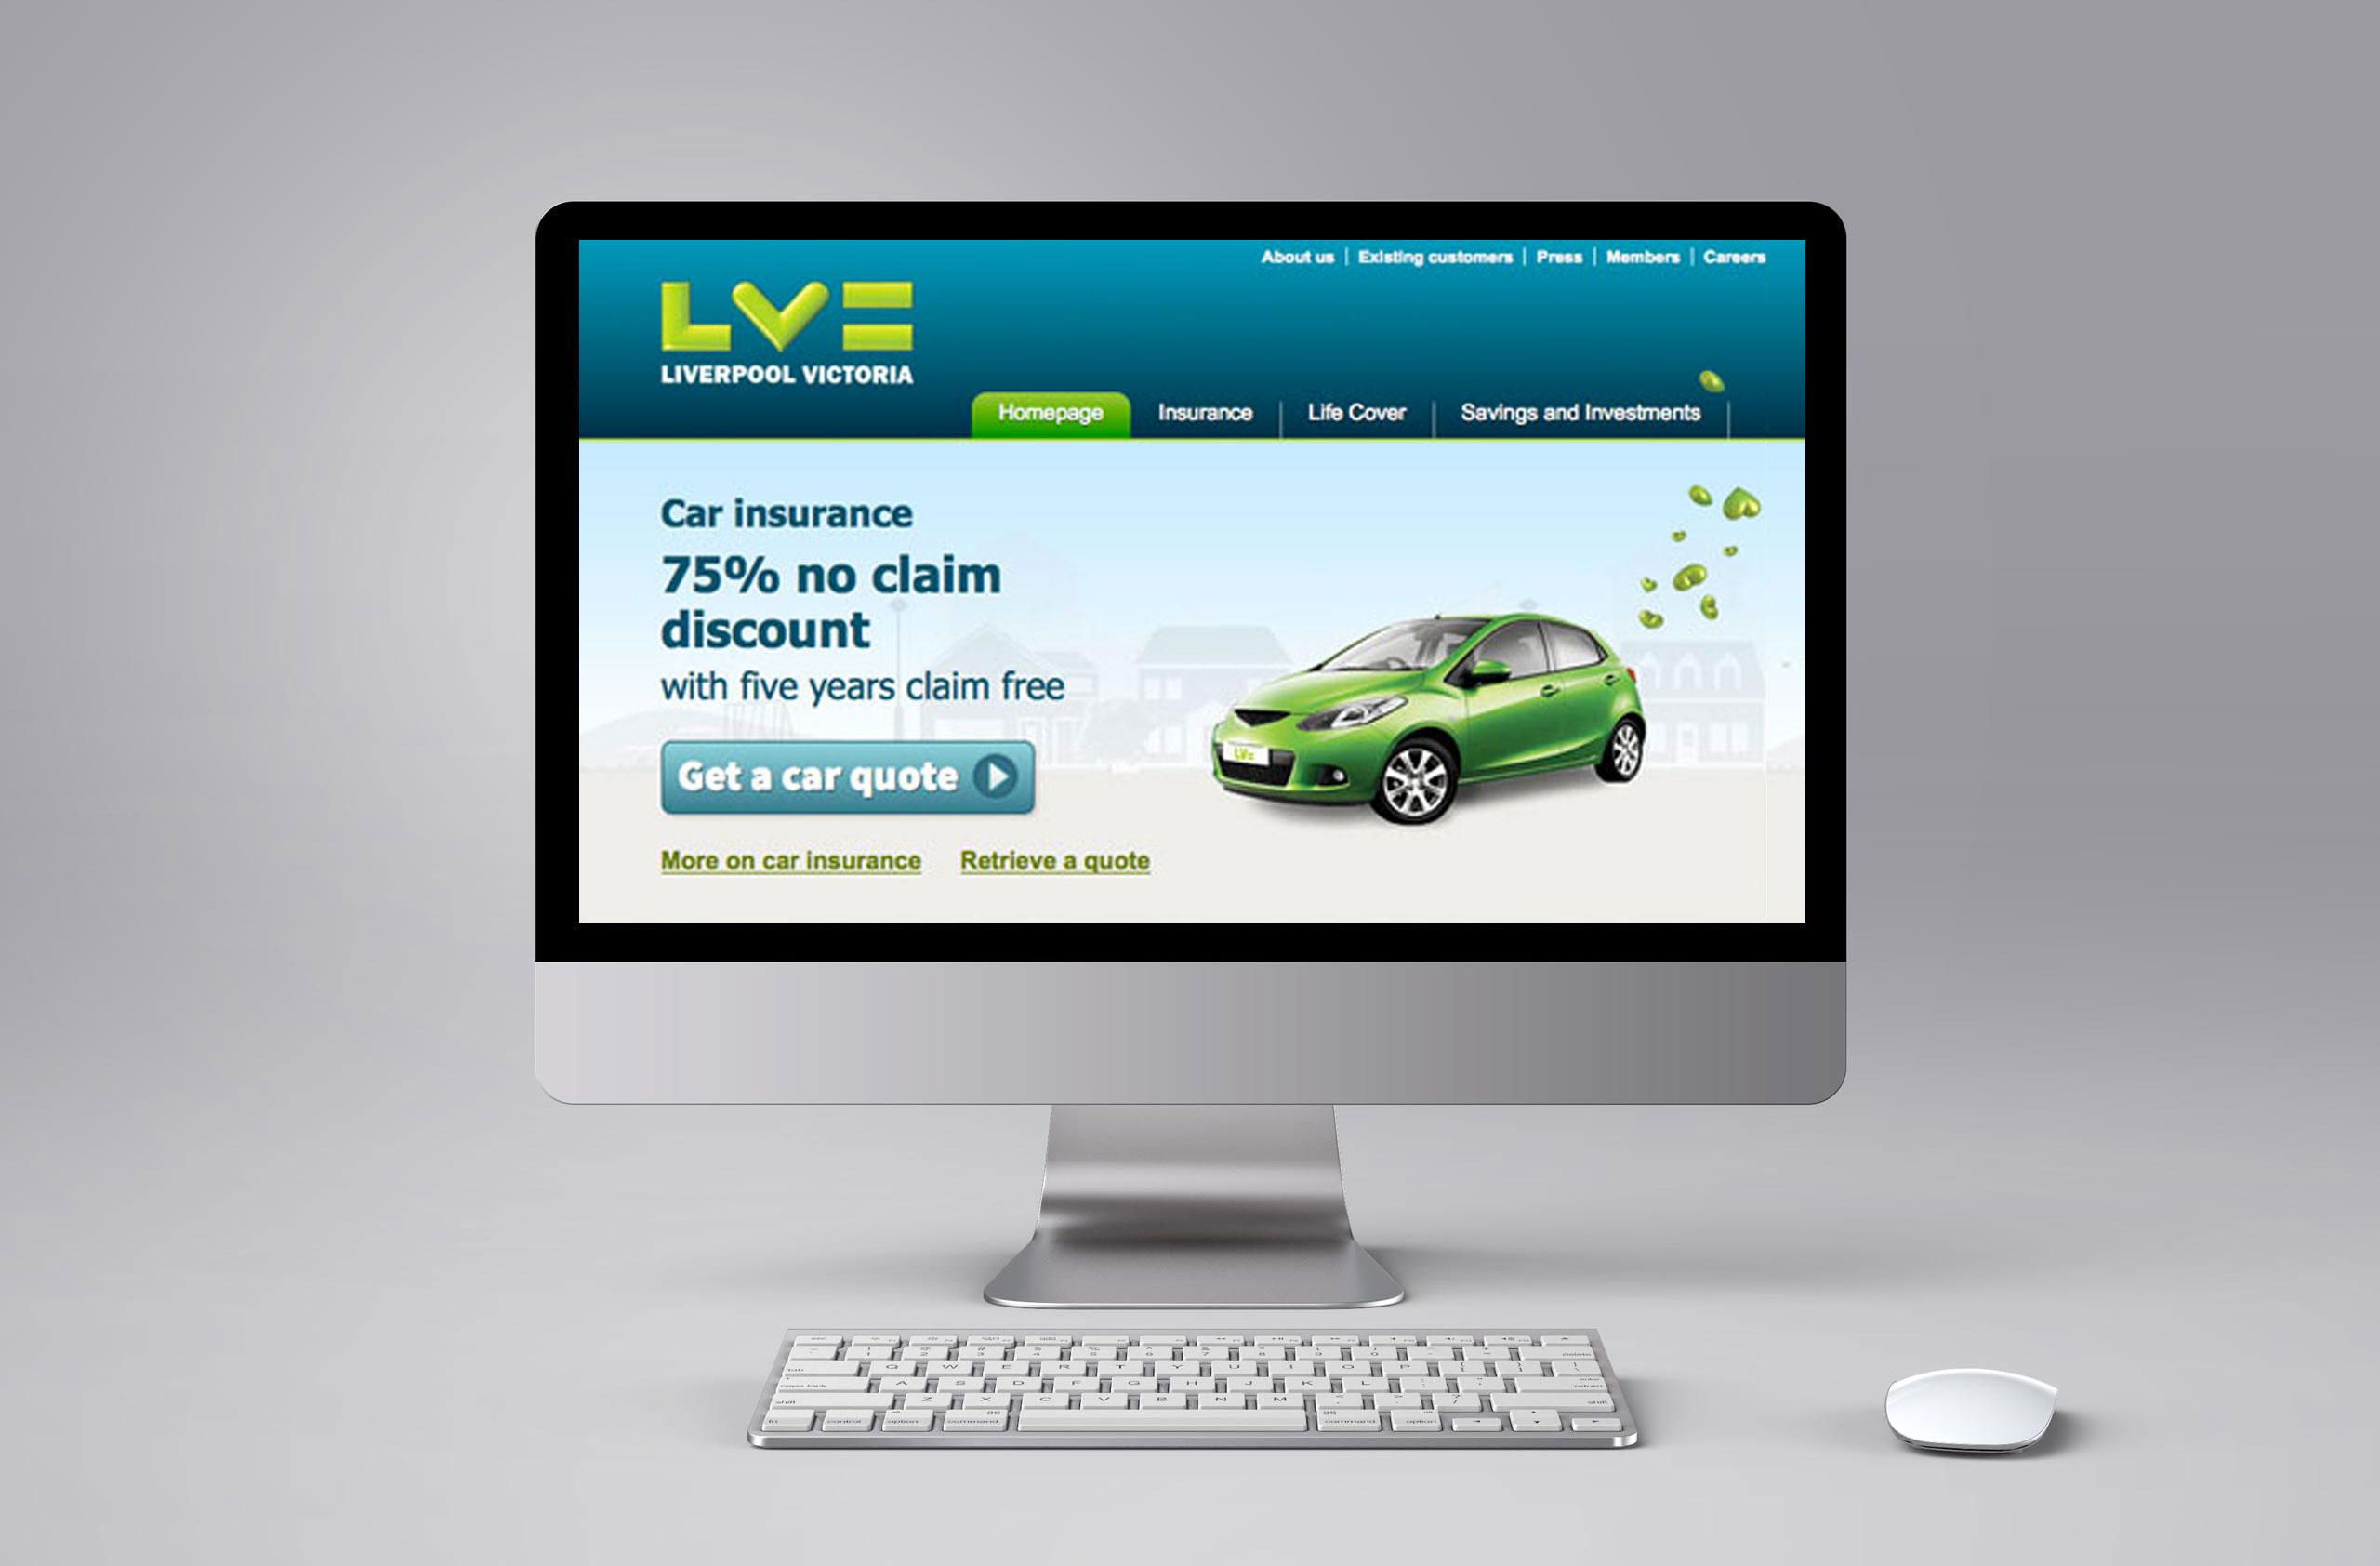 LV= Liverpool Victoria The Greedy Insurance Company